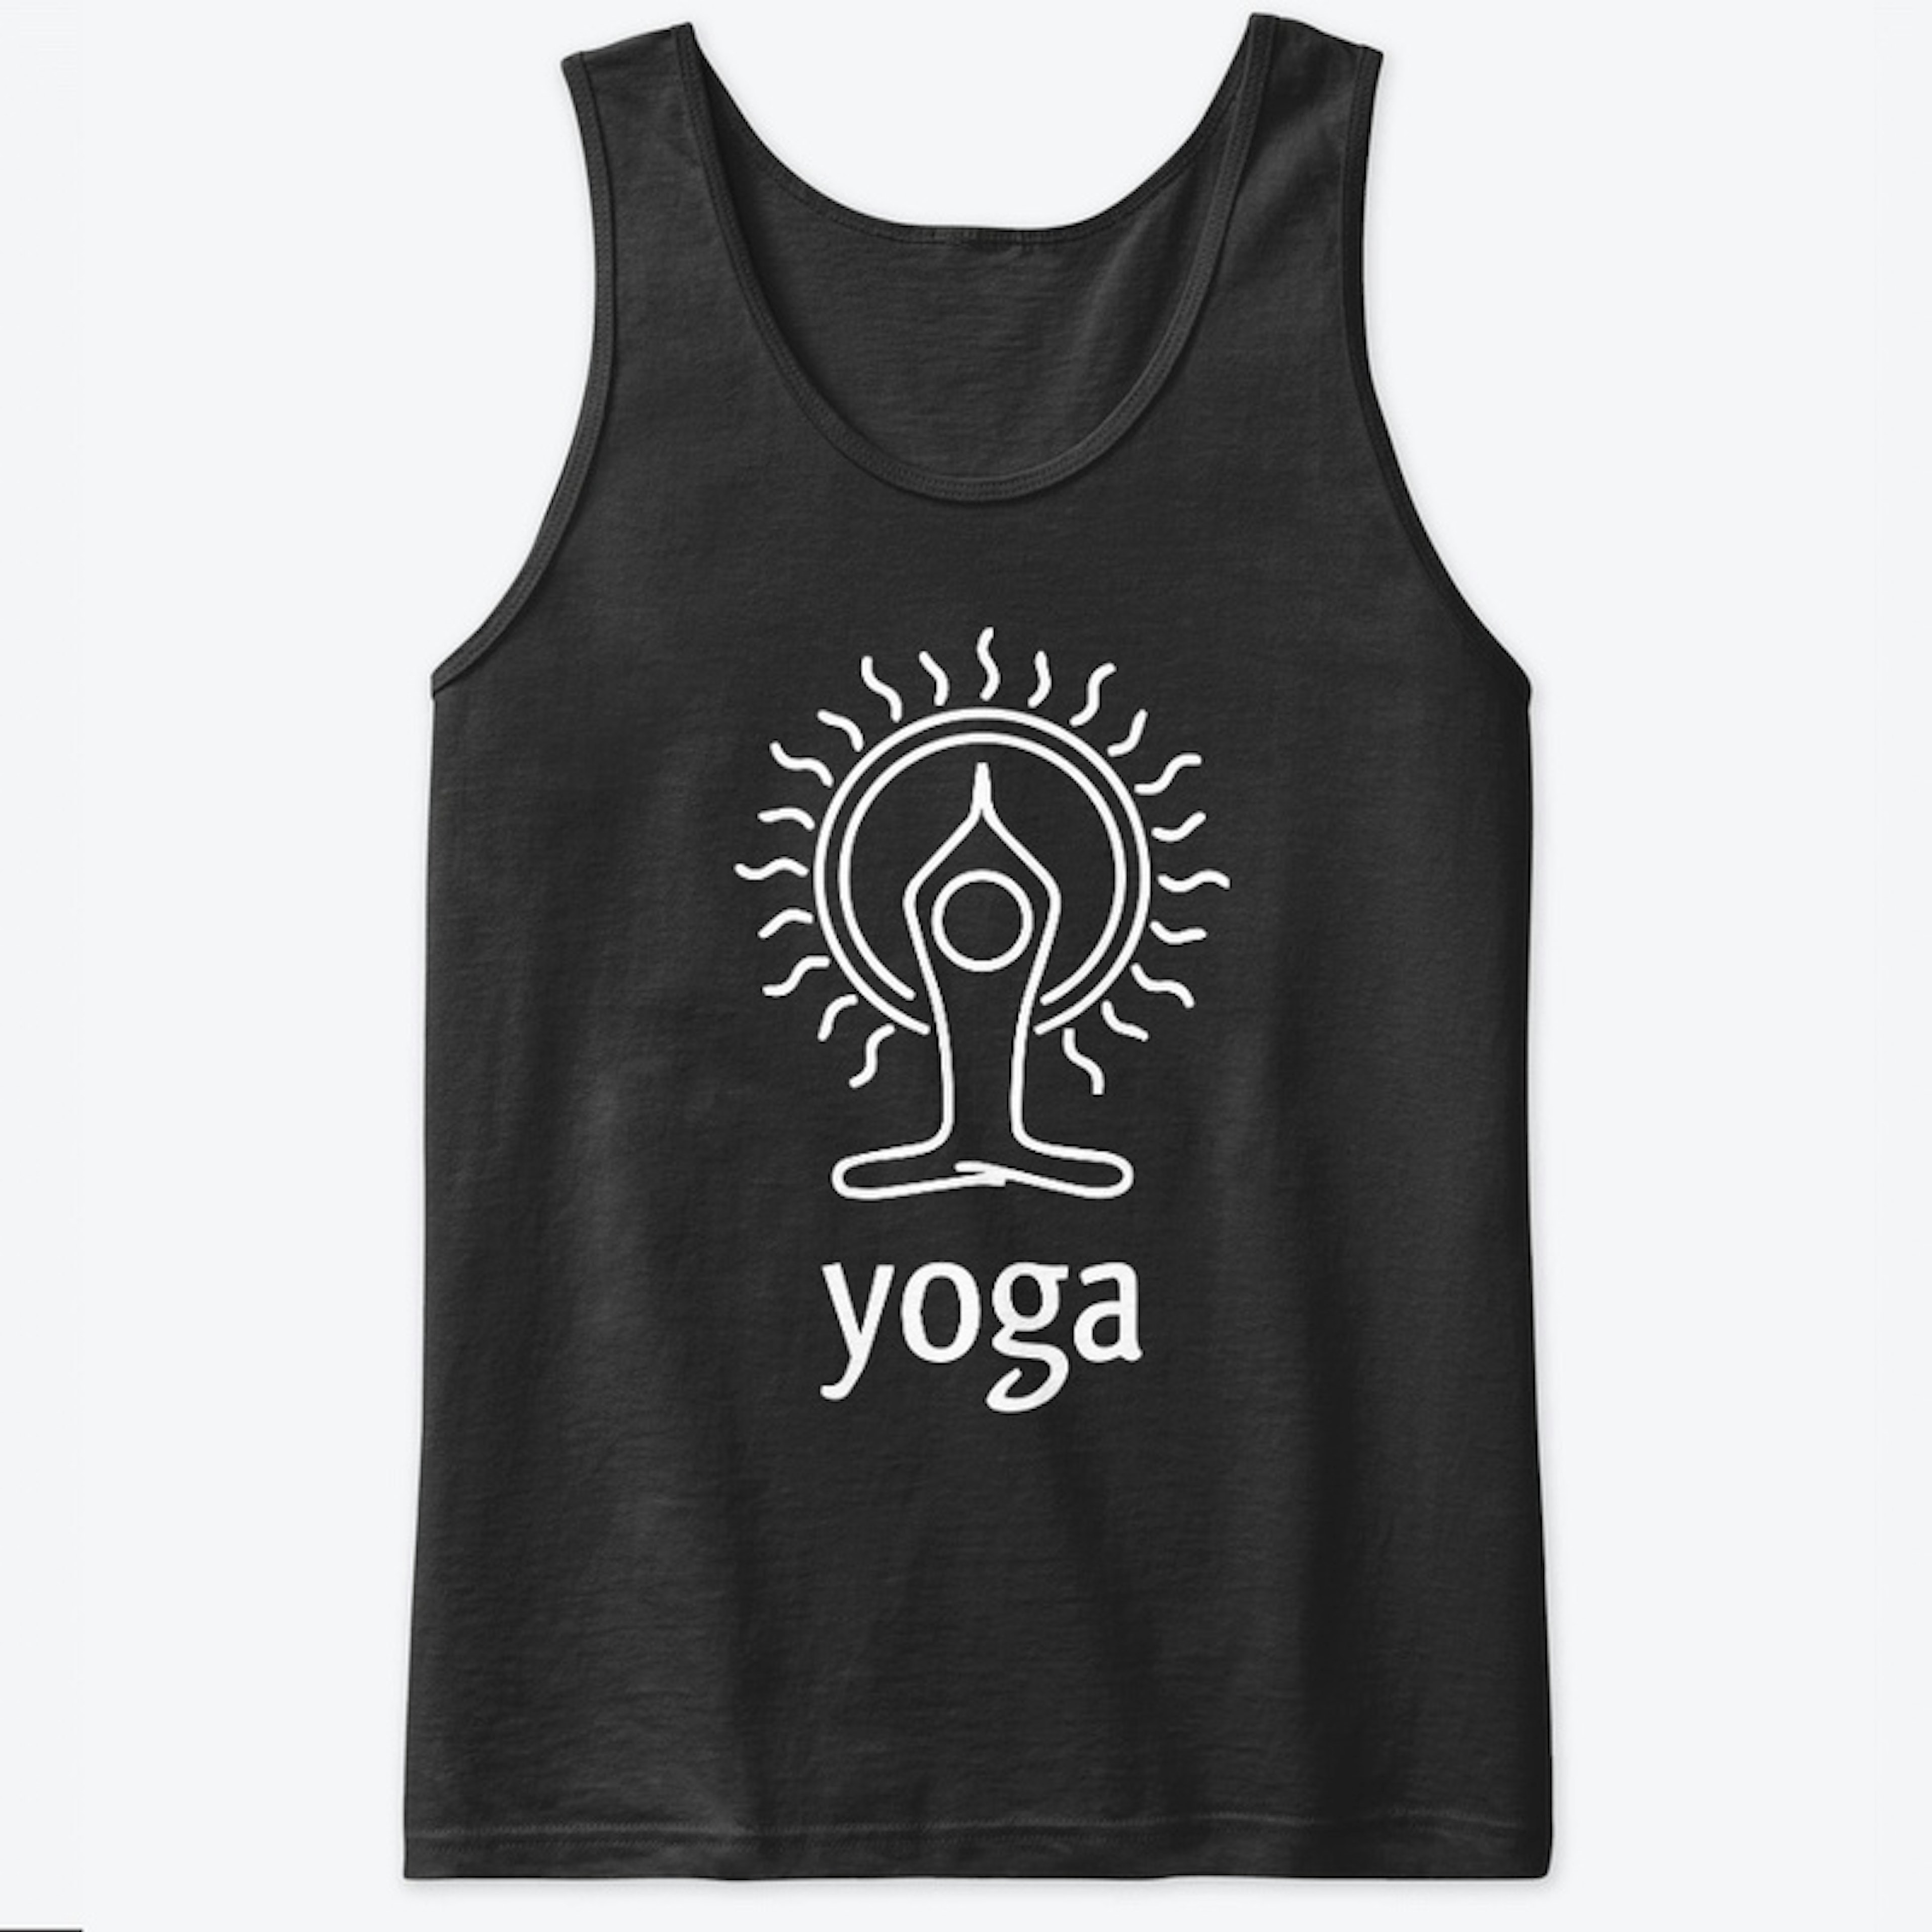  Yoga Merchandise